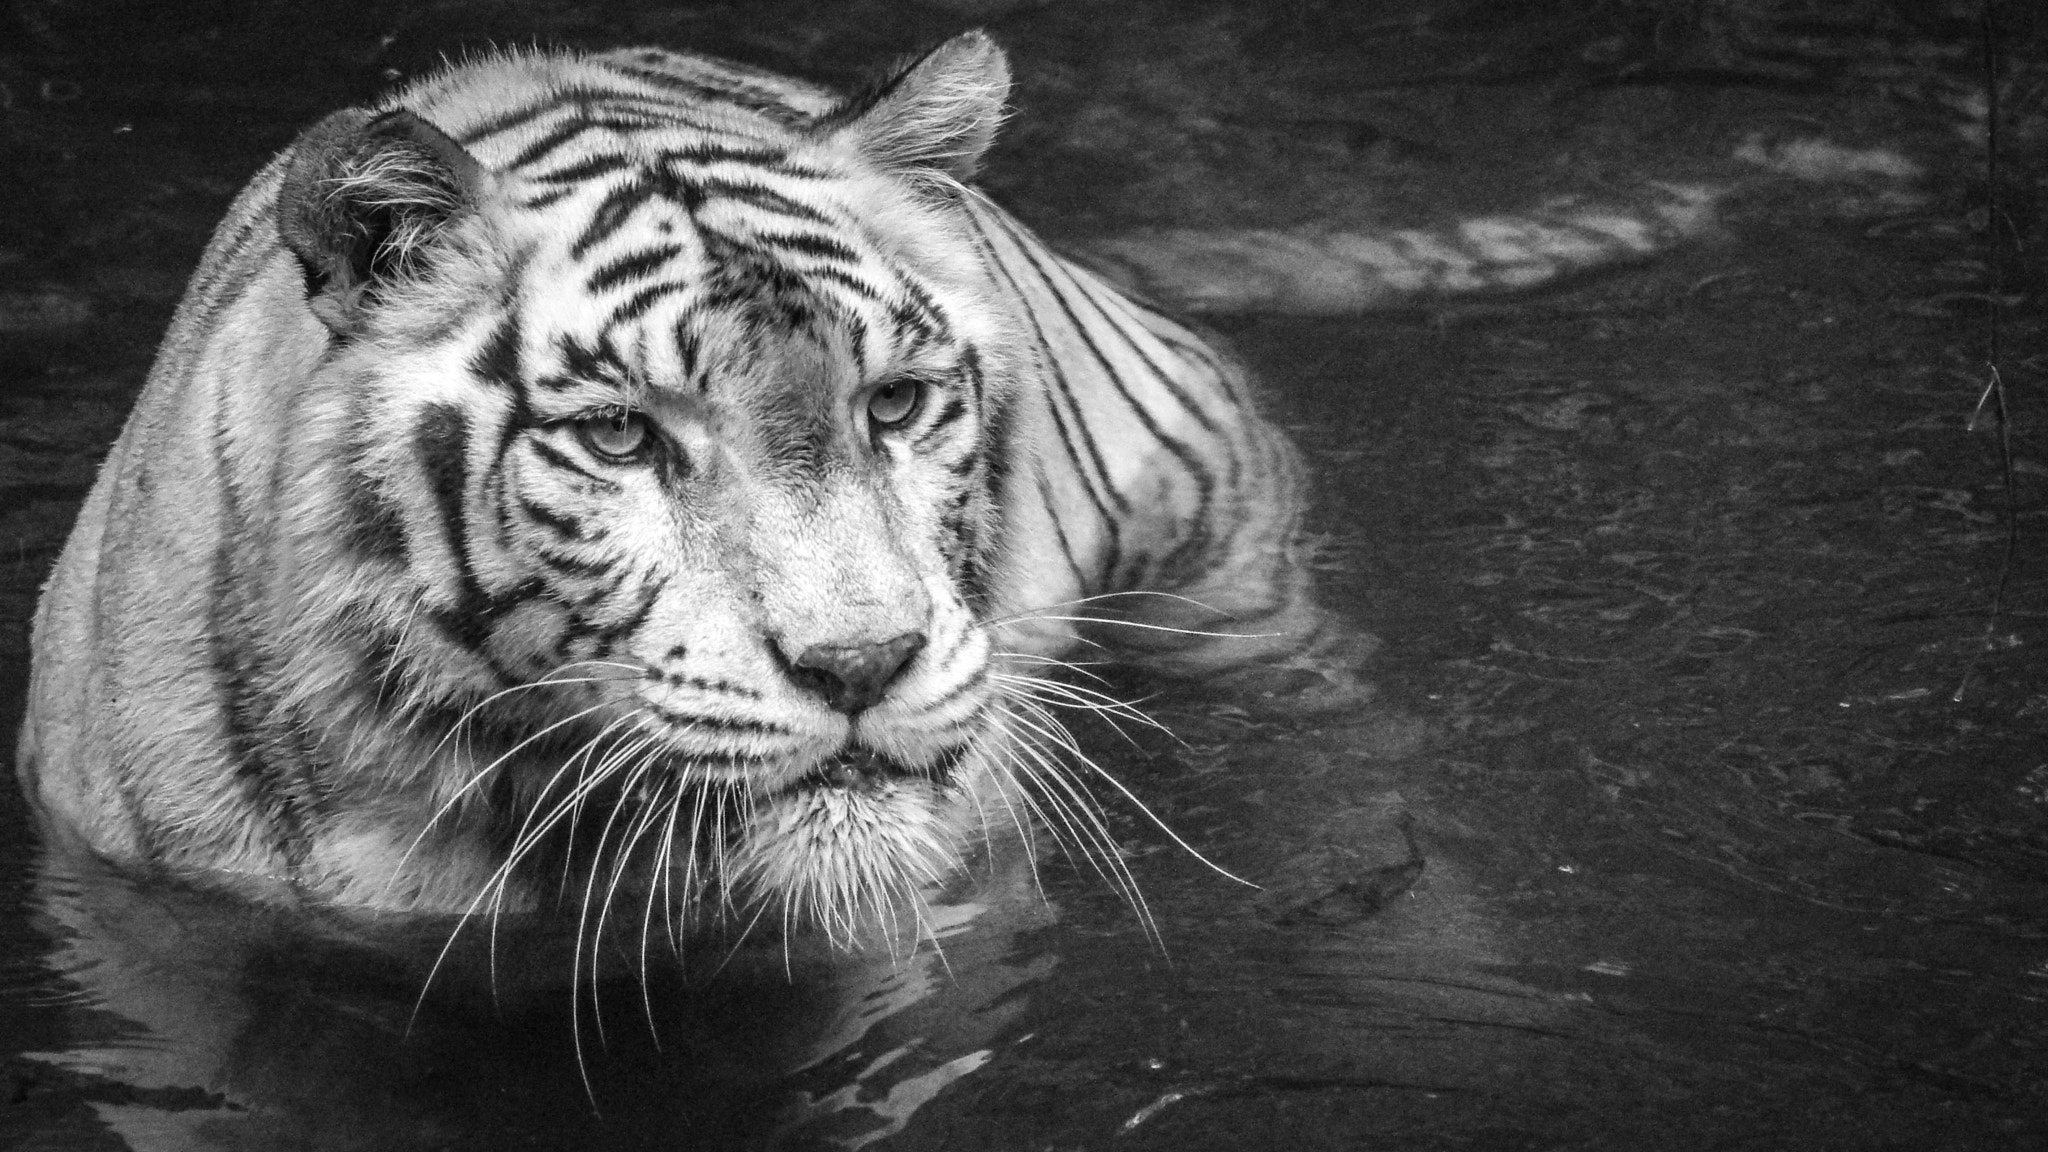 Pentax K-r + Tamron AF 70-300mm F4-5.6 LD Macro 1:2 sample photo. White tiger photography